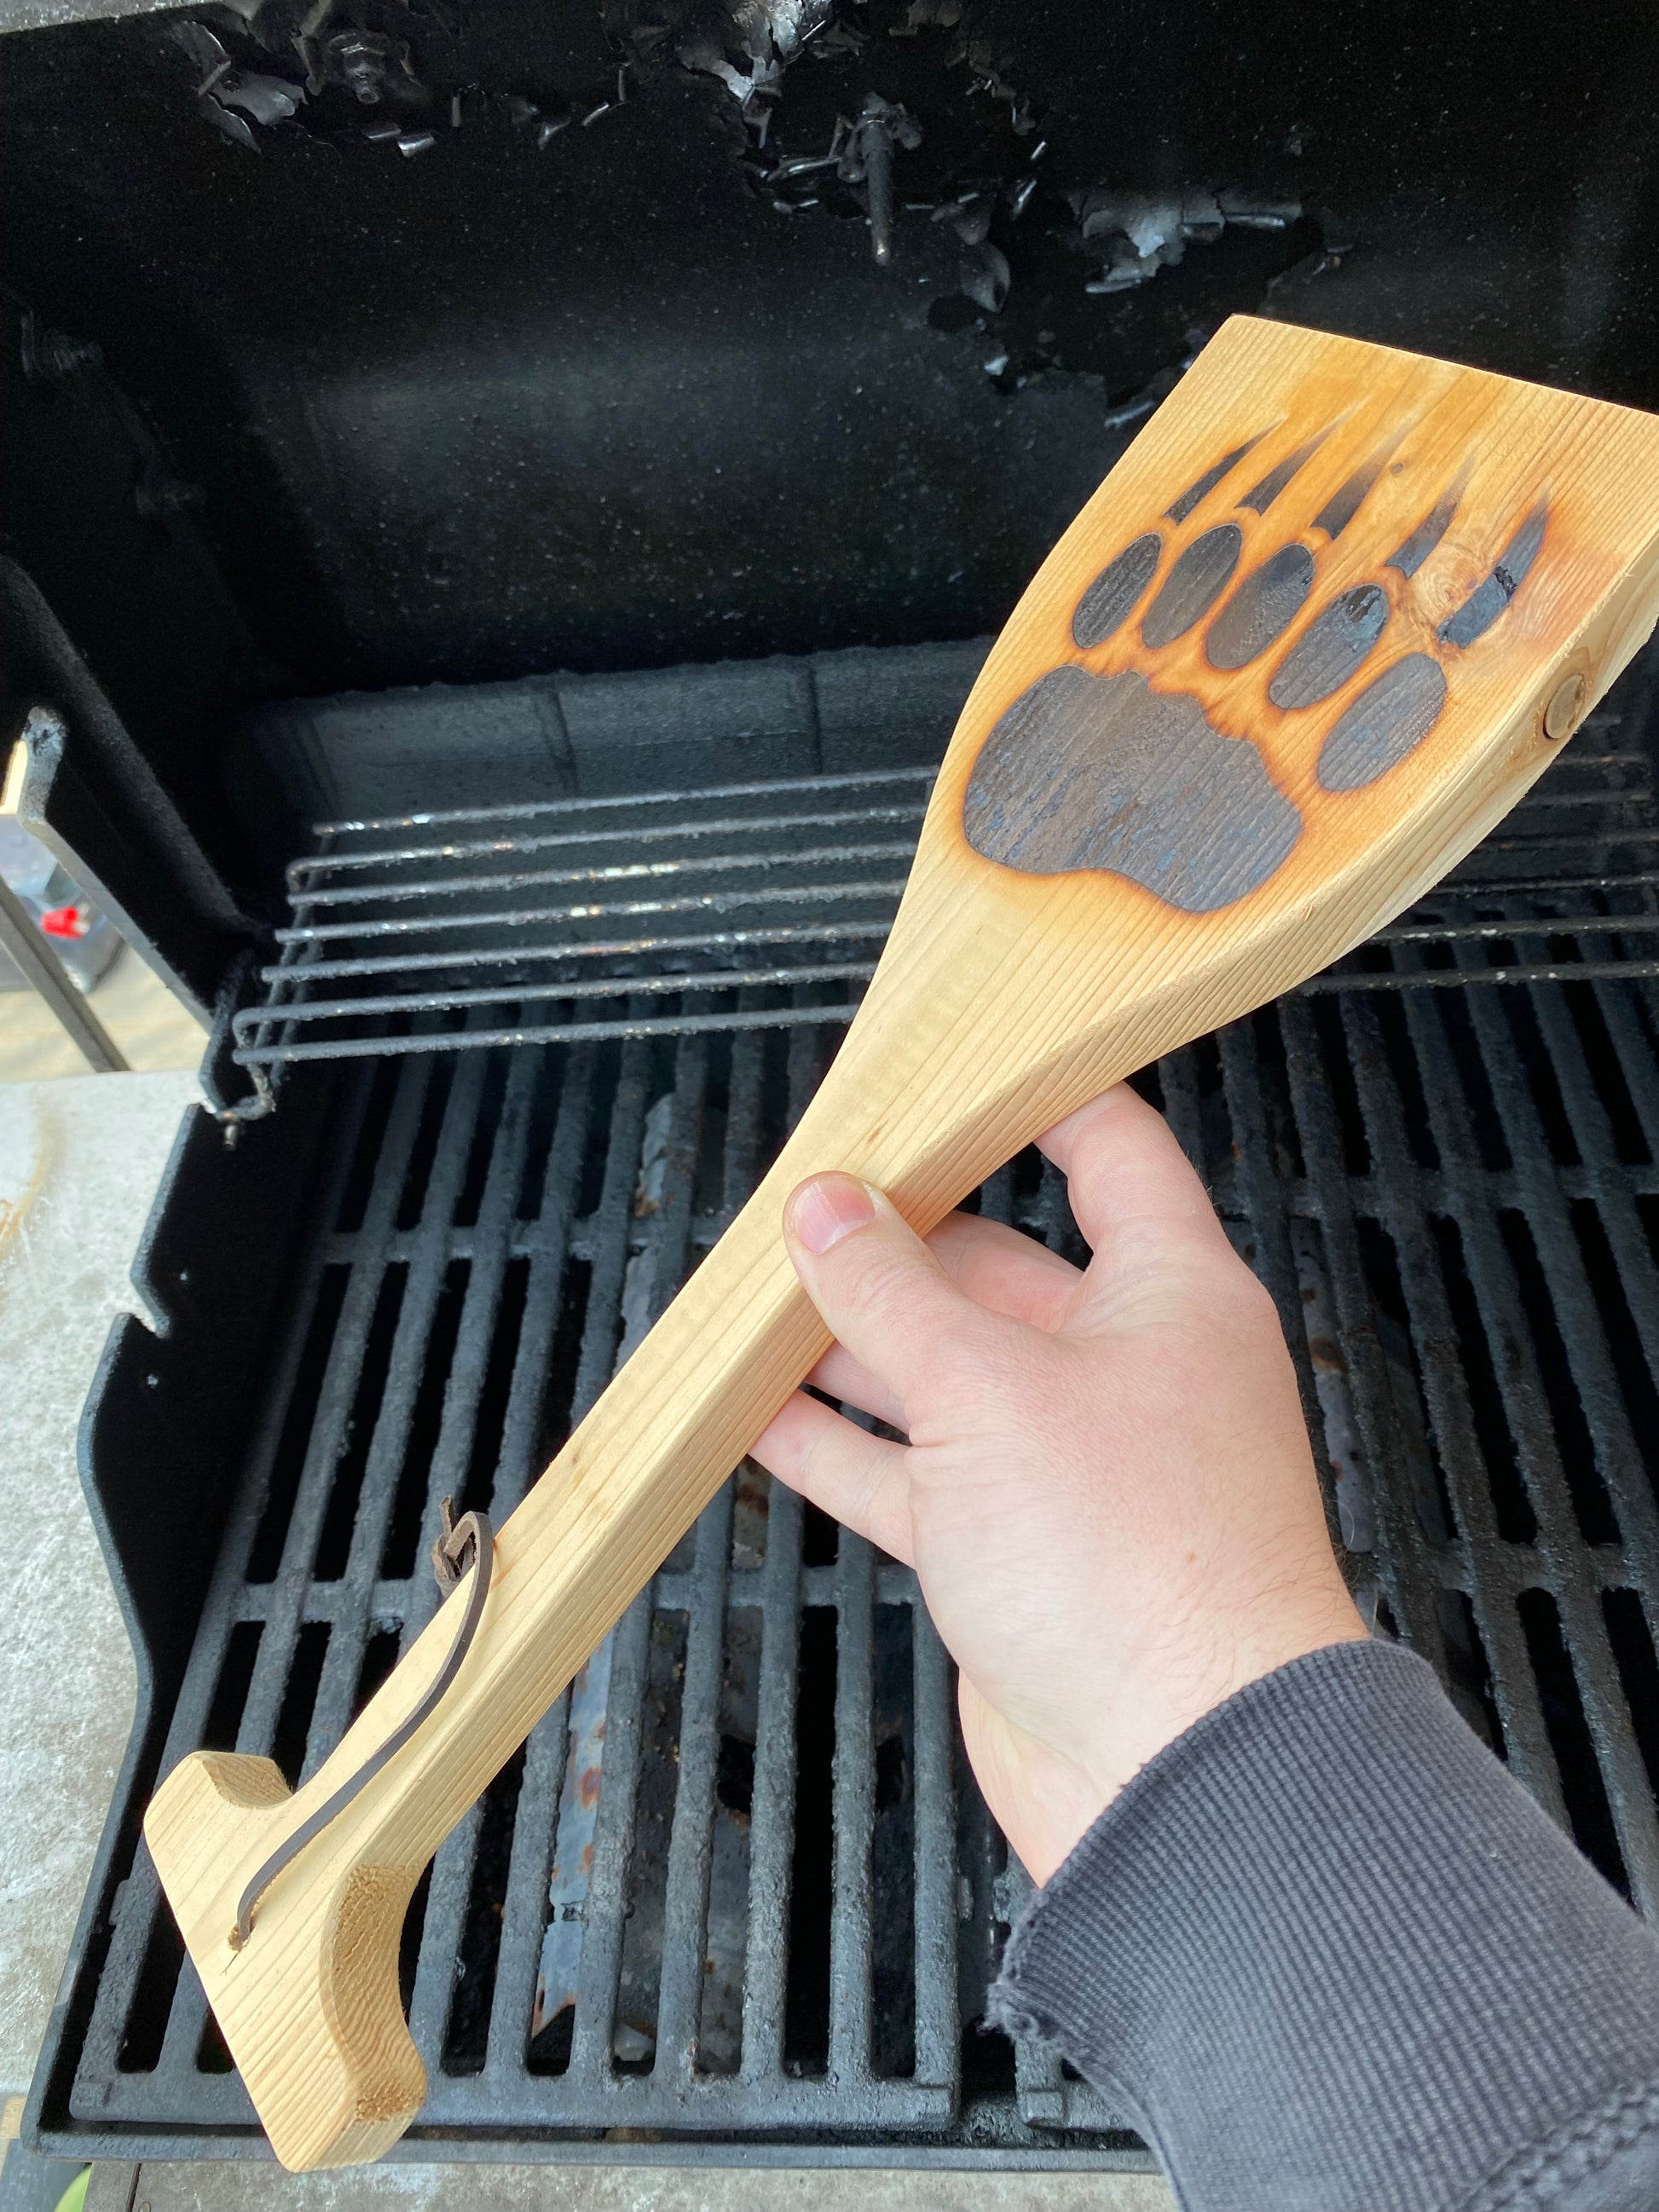 Wood Grill Scraper – Bear Paw Distribution